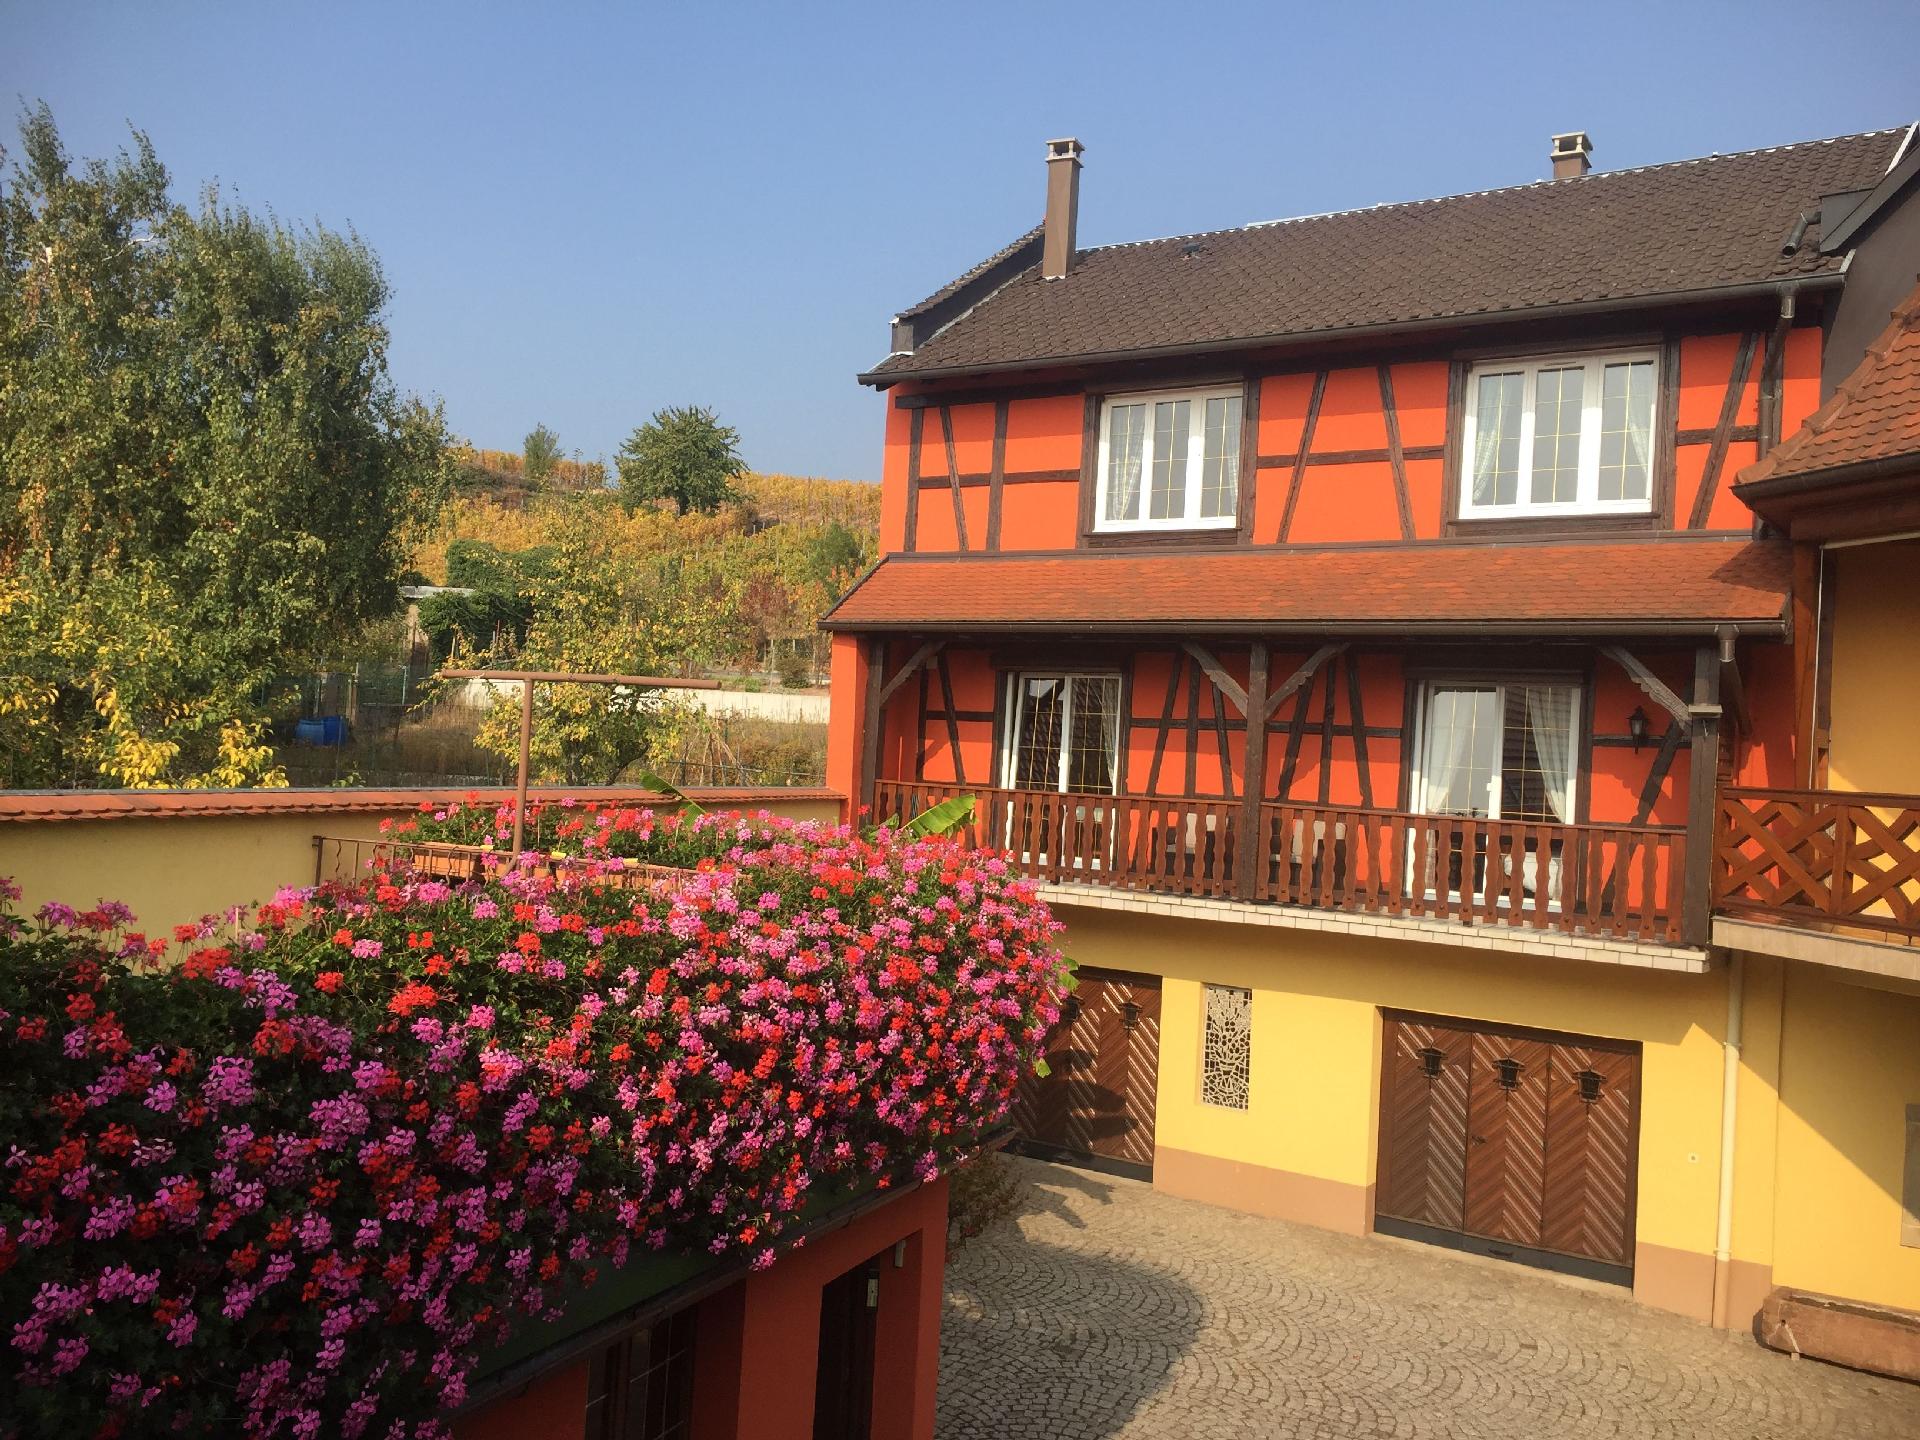  Ferienwohnung mit Terrasse für sieben Person Ferienhaus in Europa